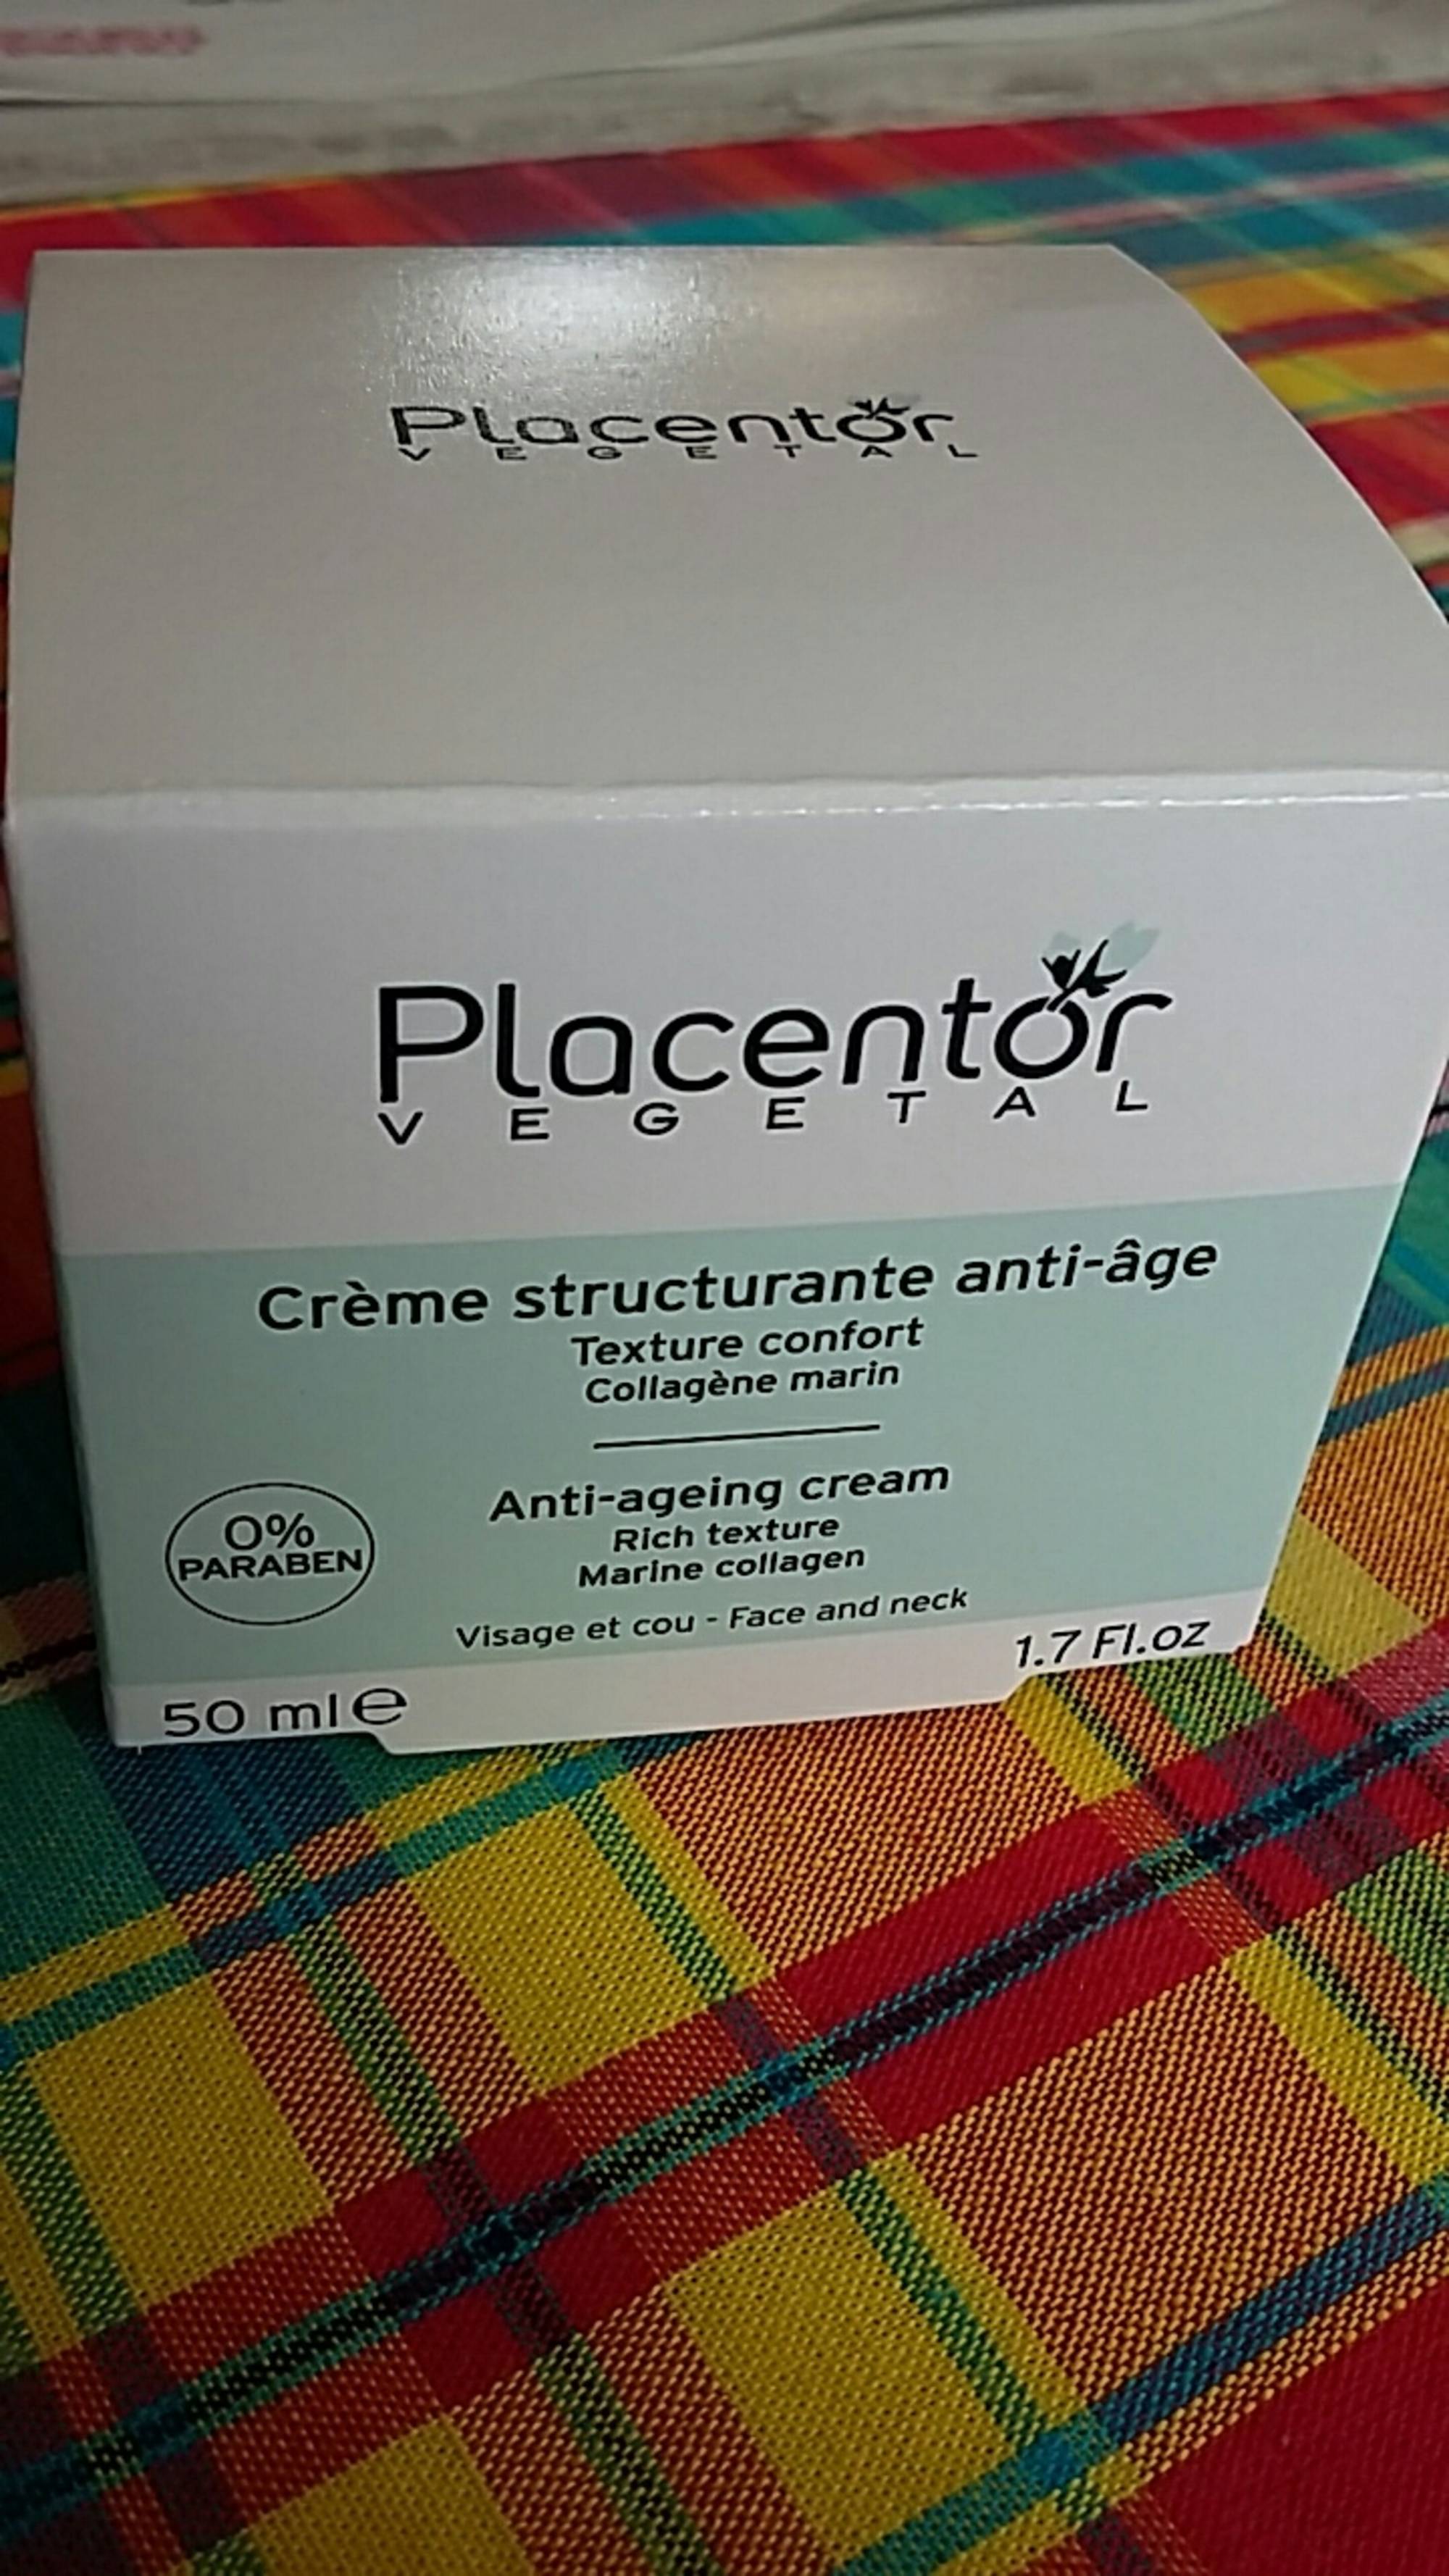 PLACENTOR VÉGÉTAL - Crème structurante anti-âge